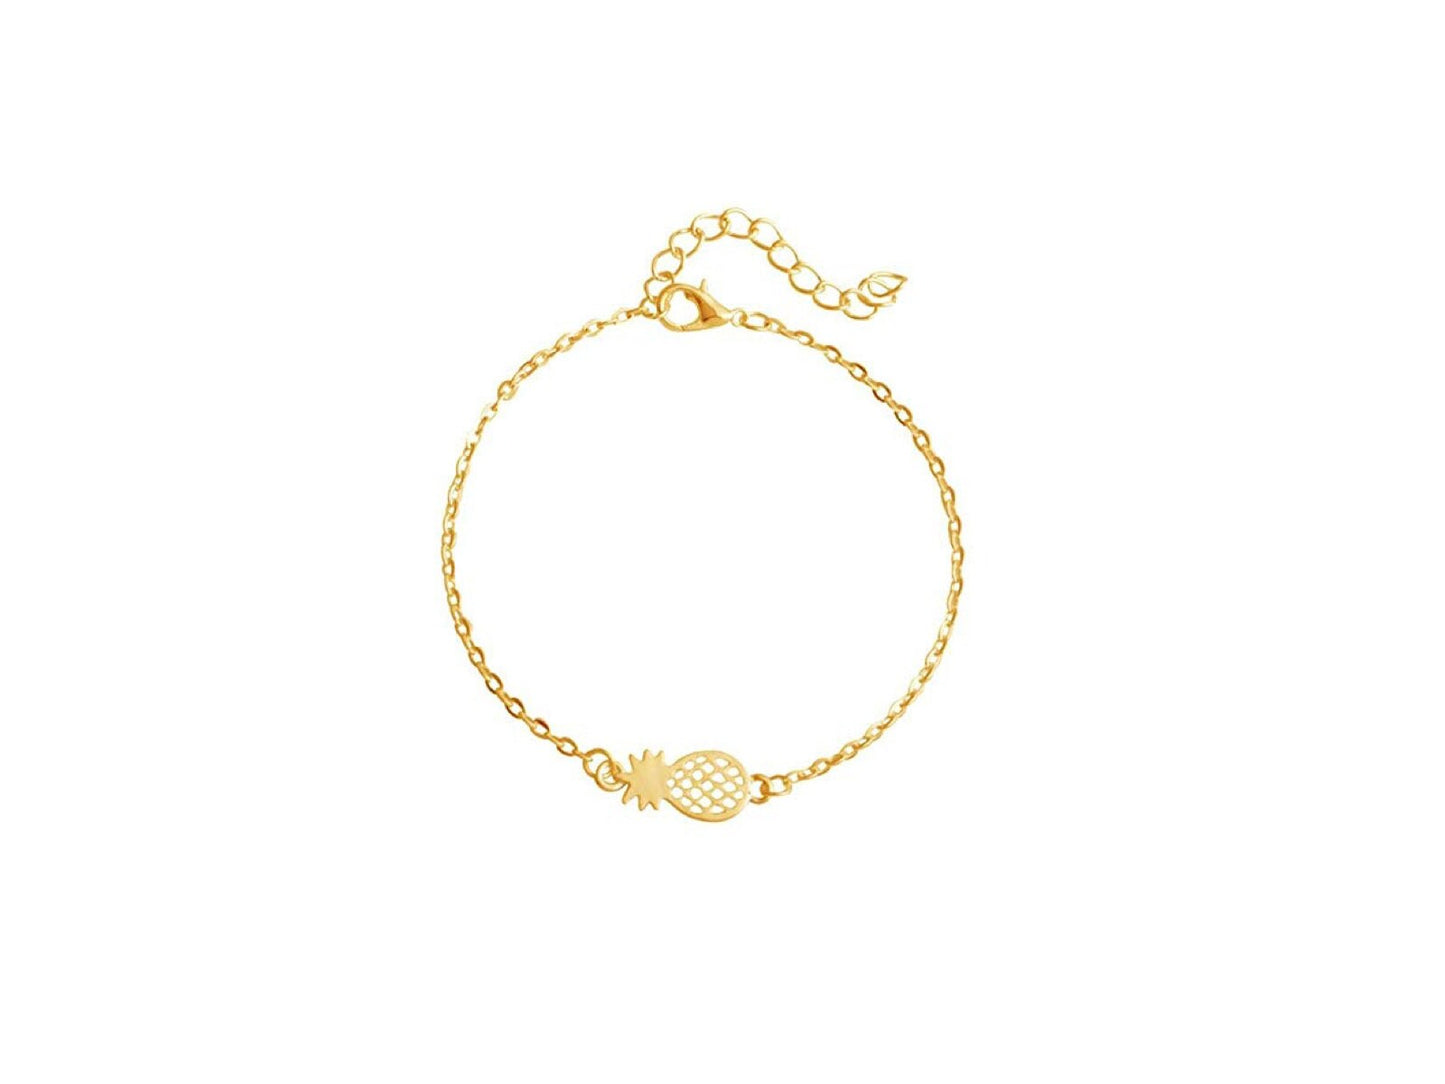 Golden brass pineapple thin bracelet